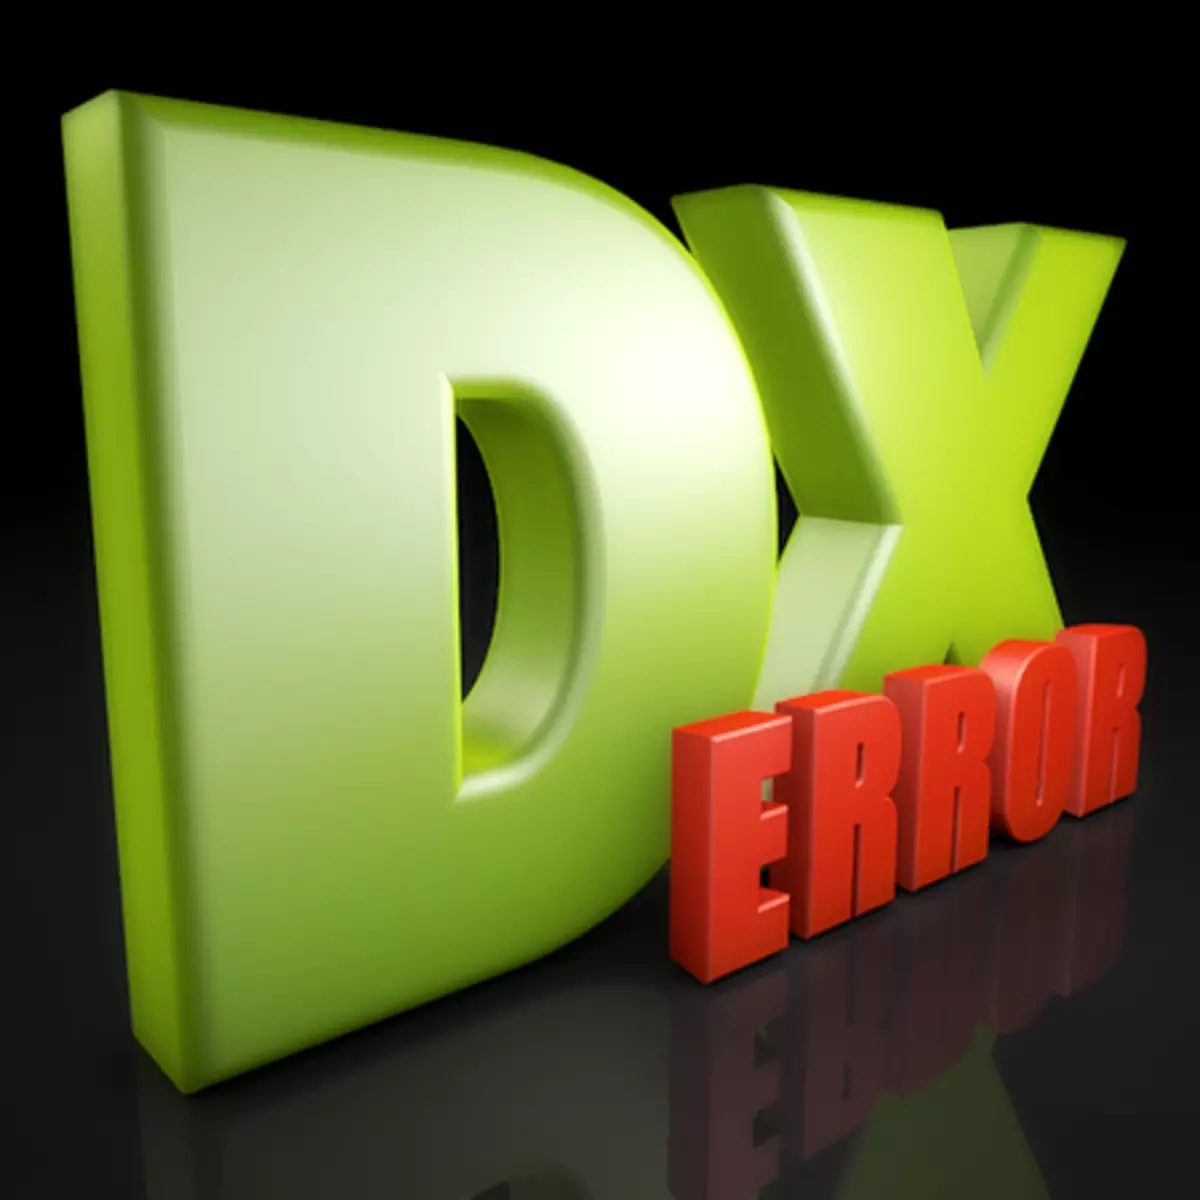 Erro de configuração do DirectX Um erro interno ocorreu